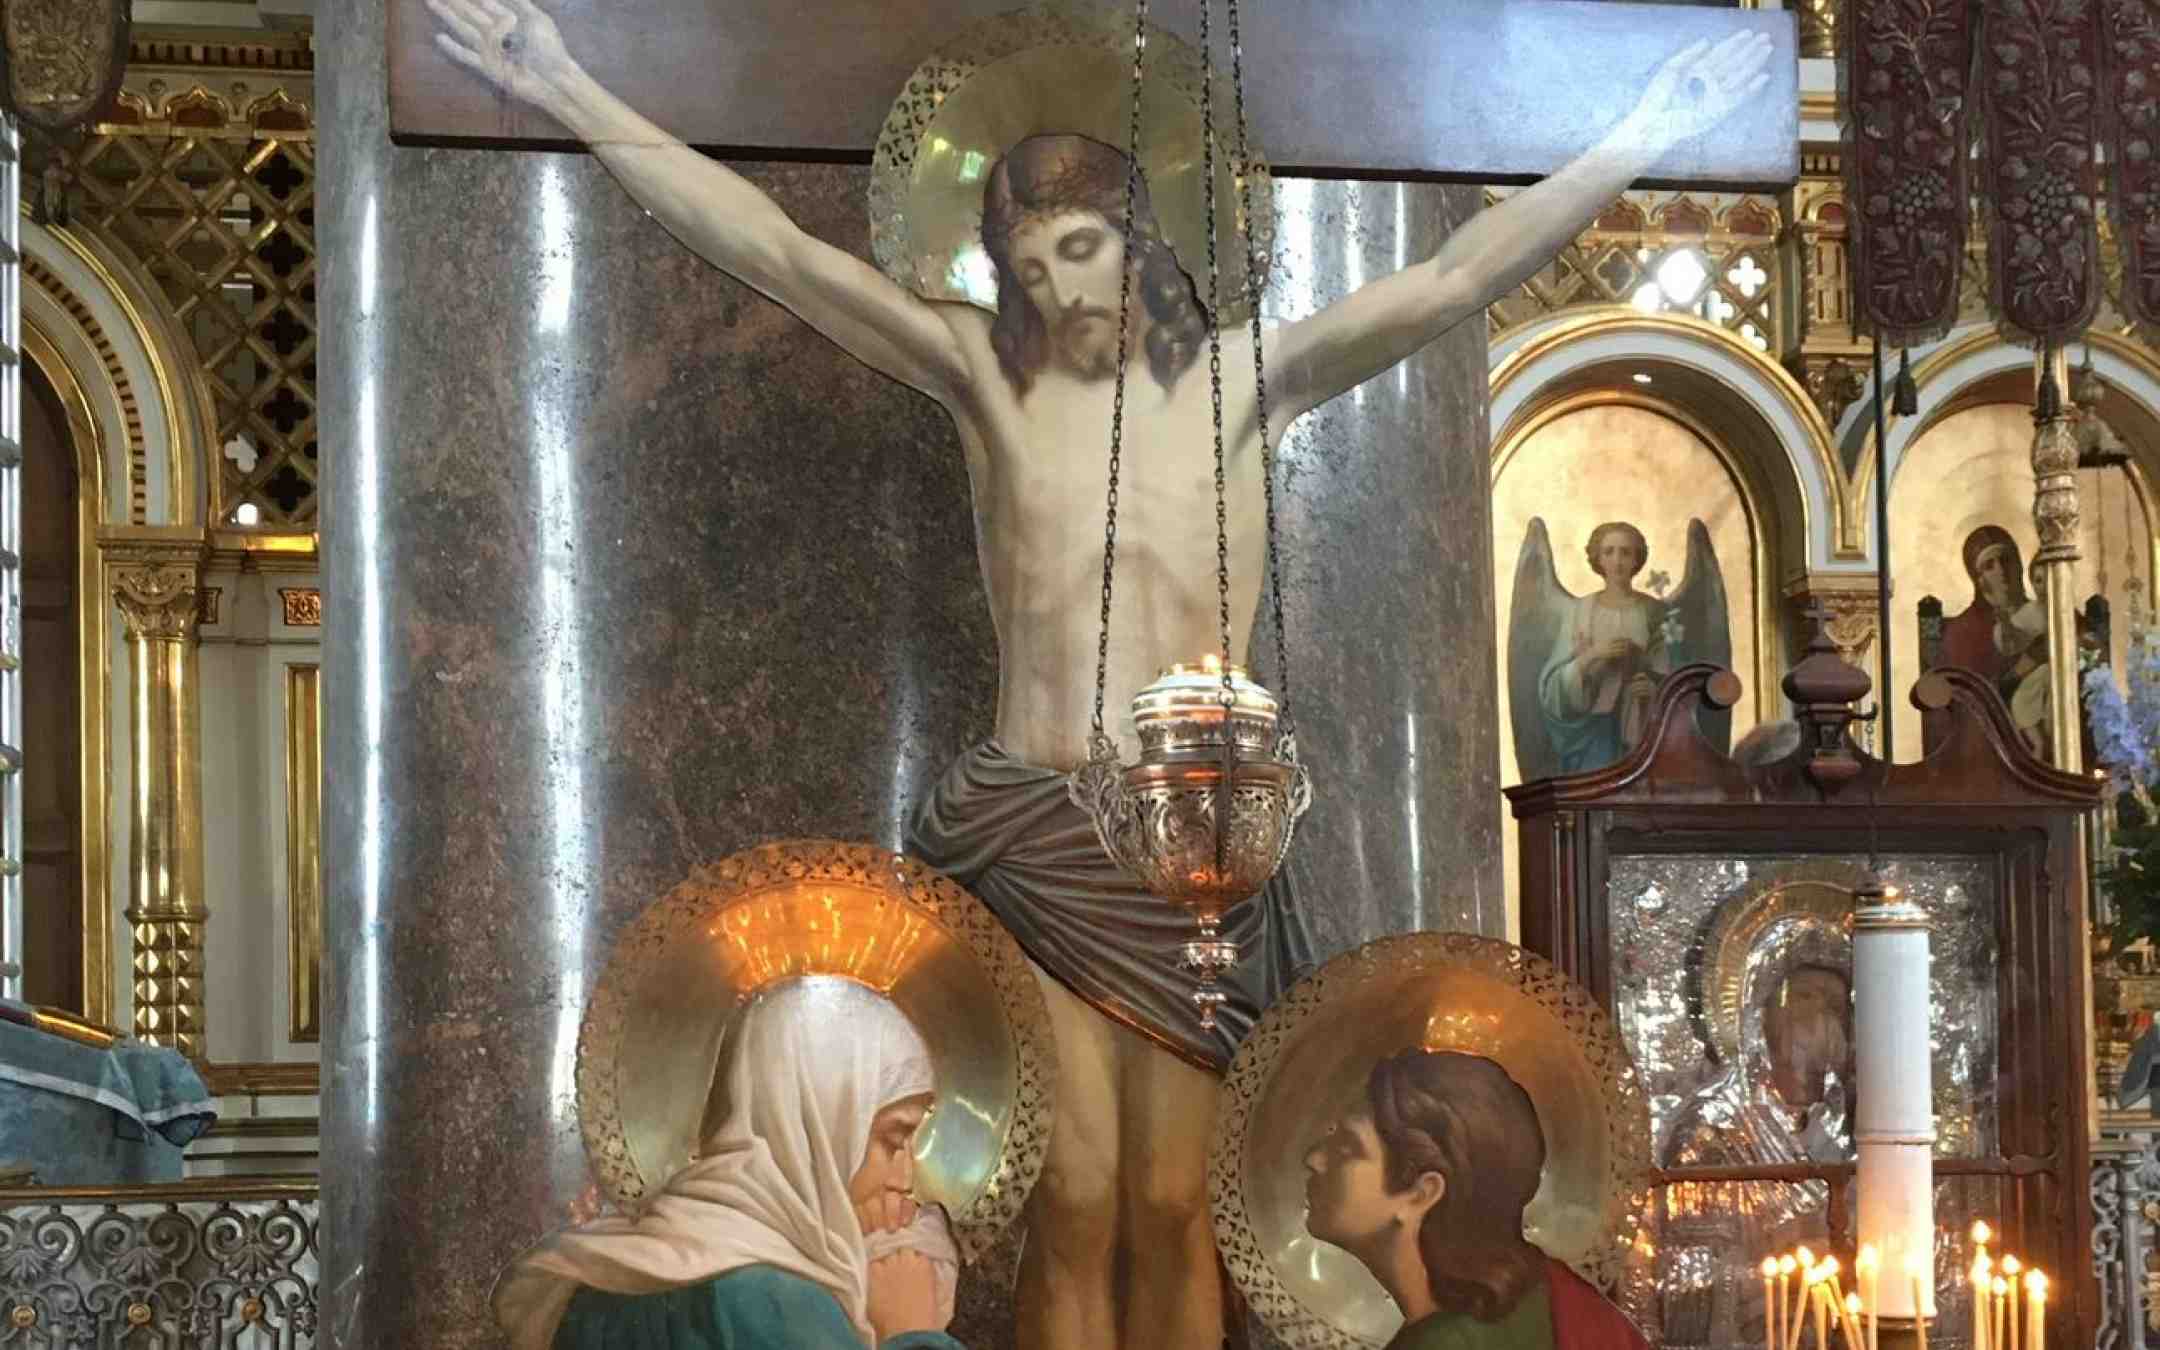 Golgata-risti Uspenskin katedraalissa